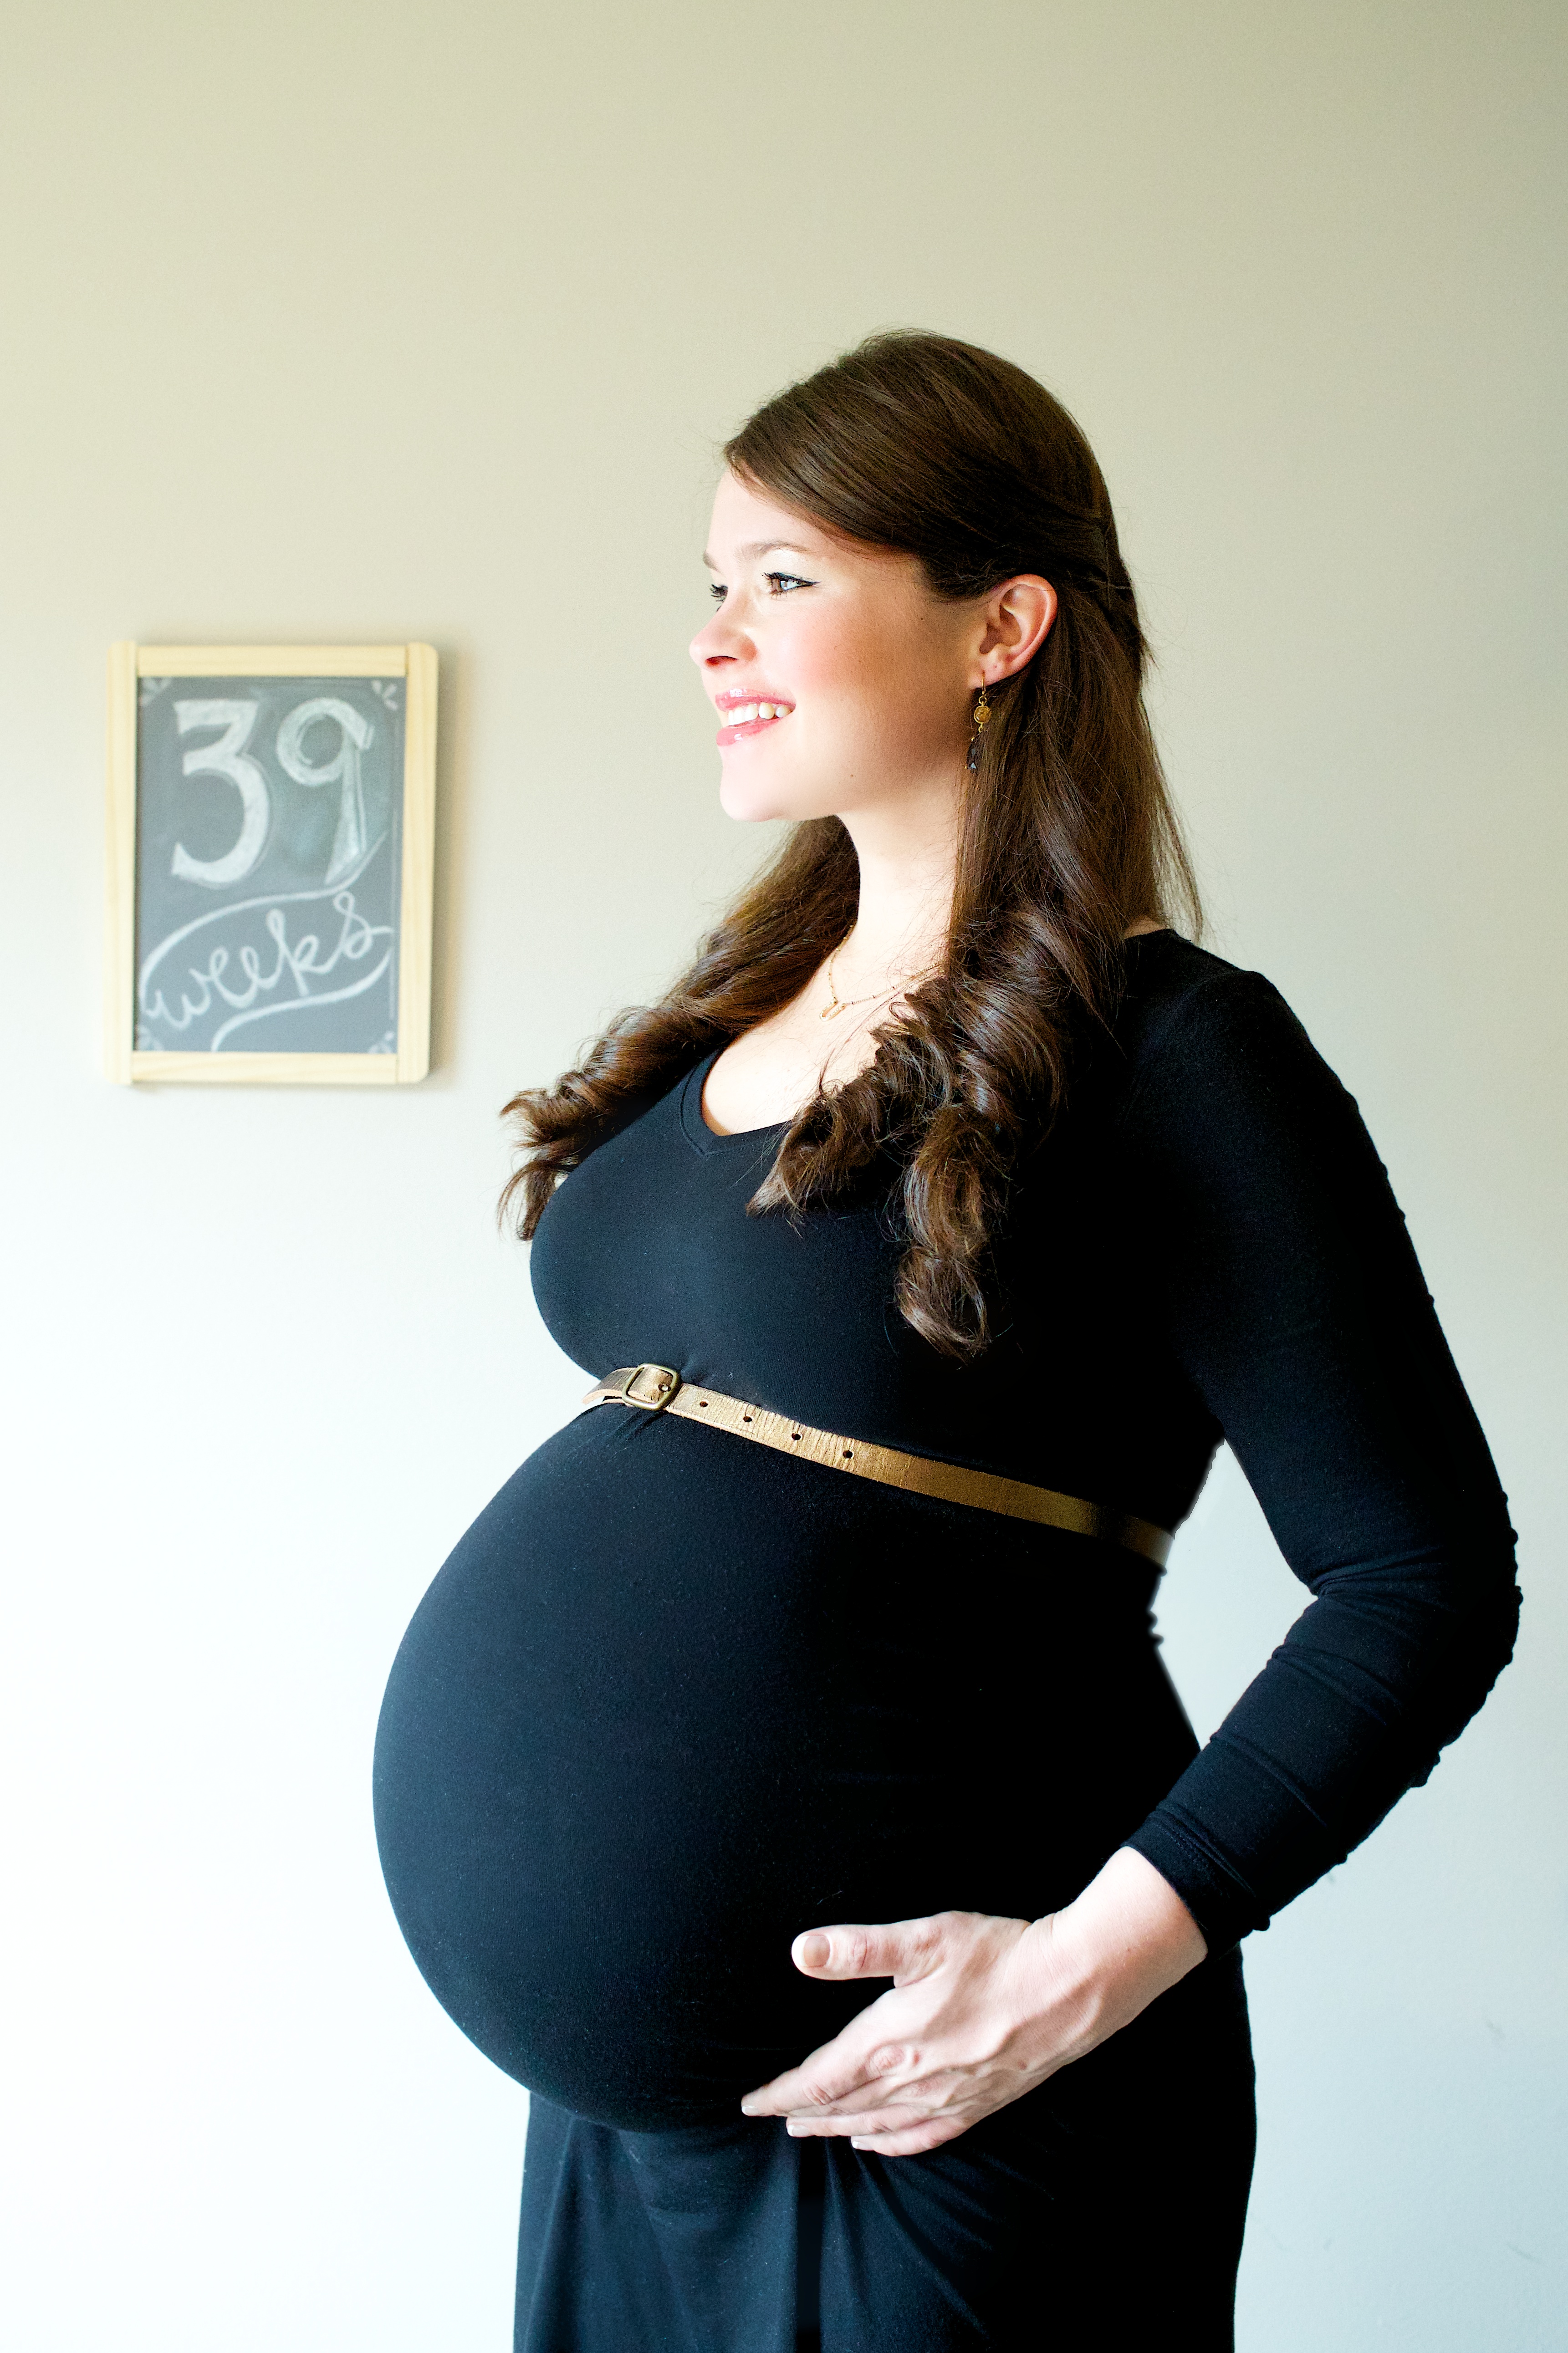 Pregnant Pics 20